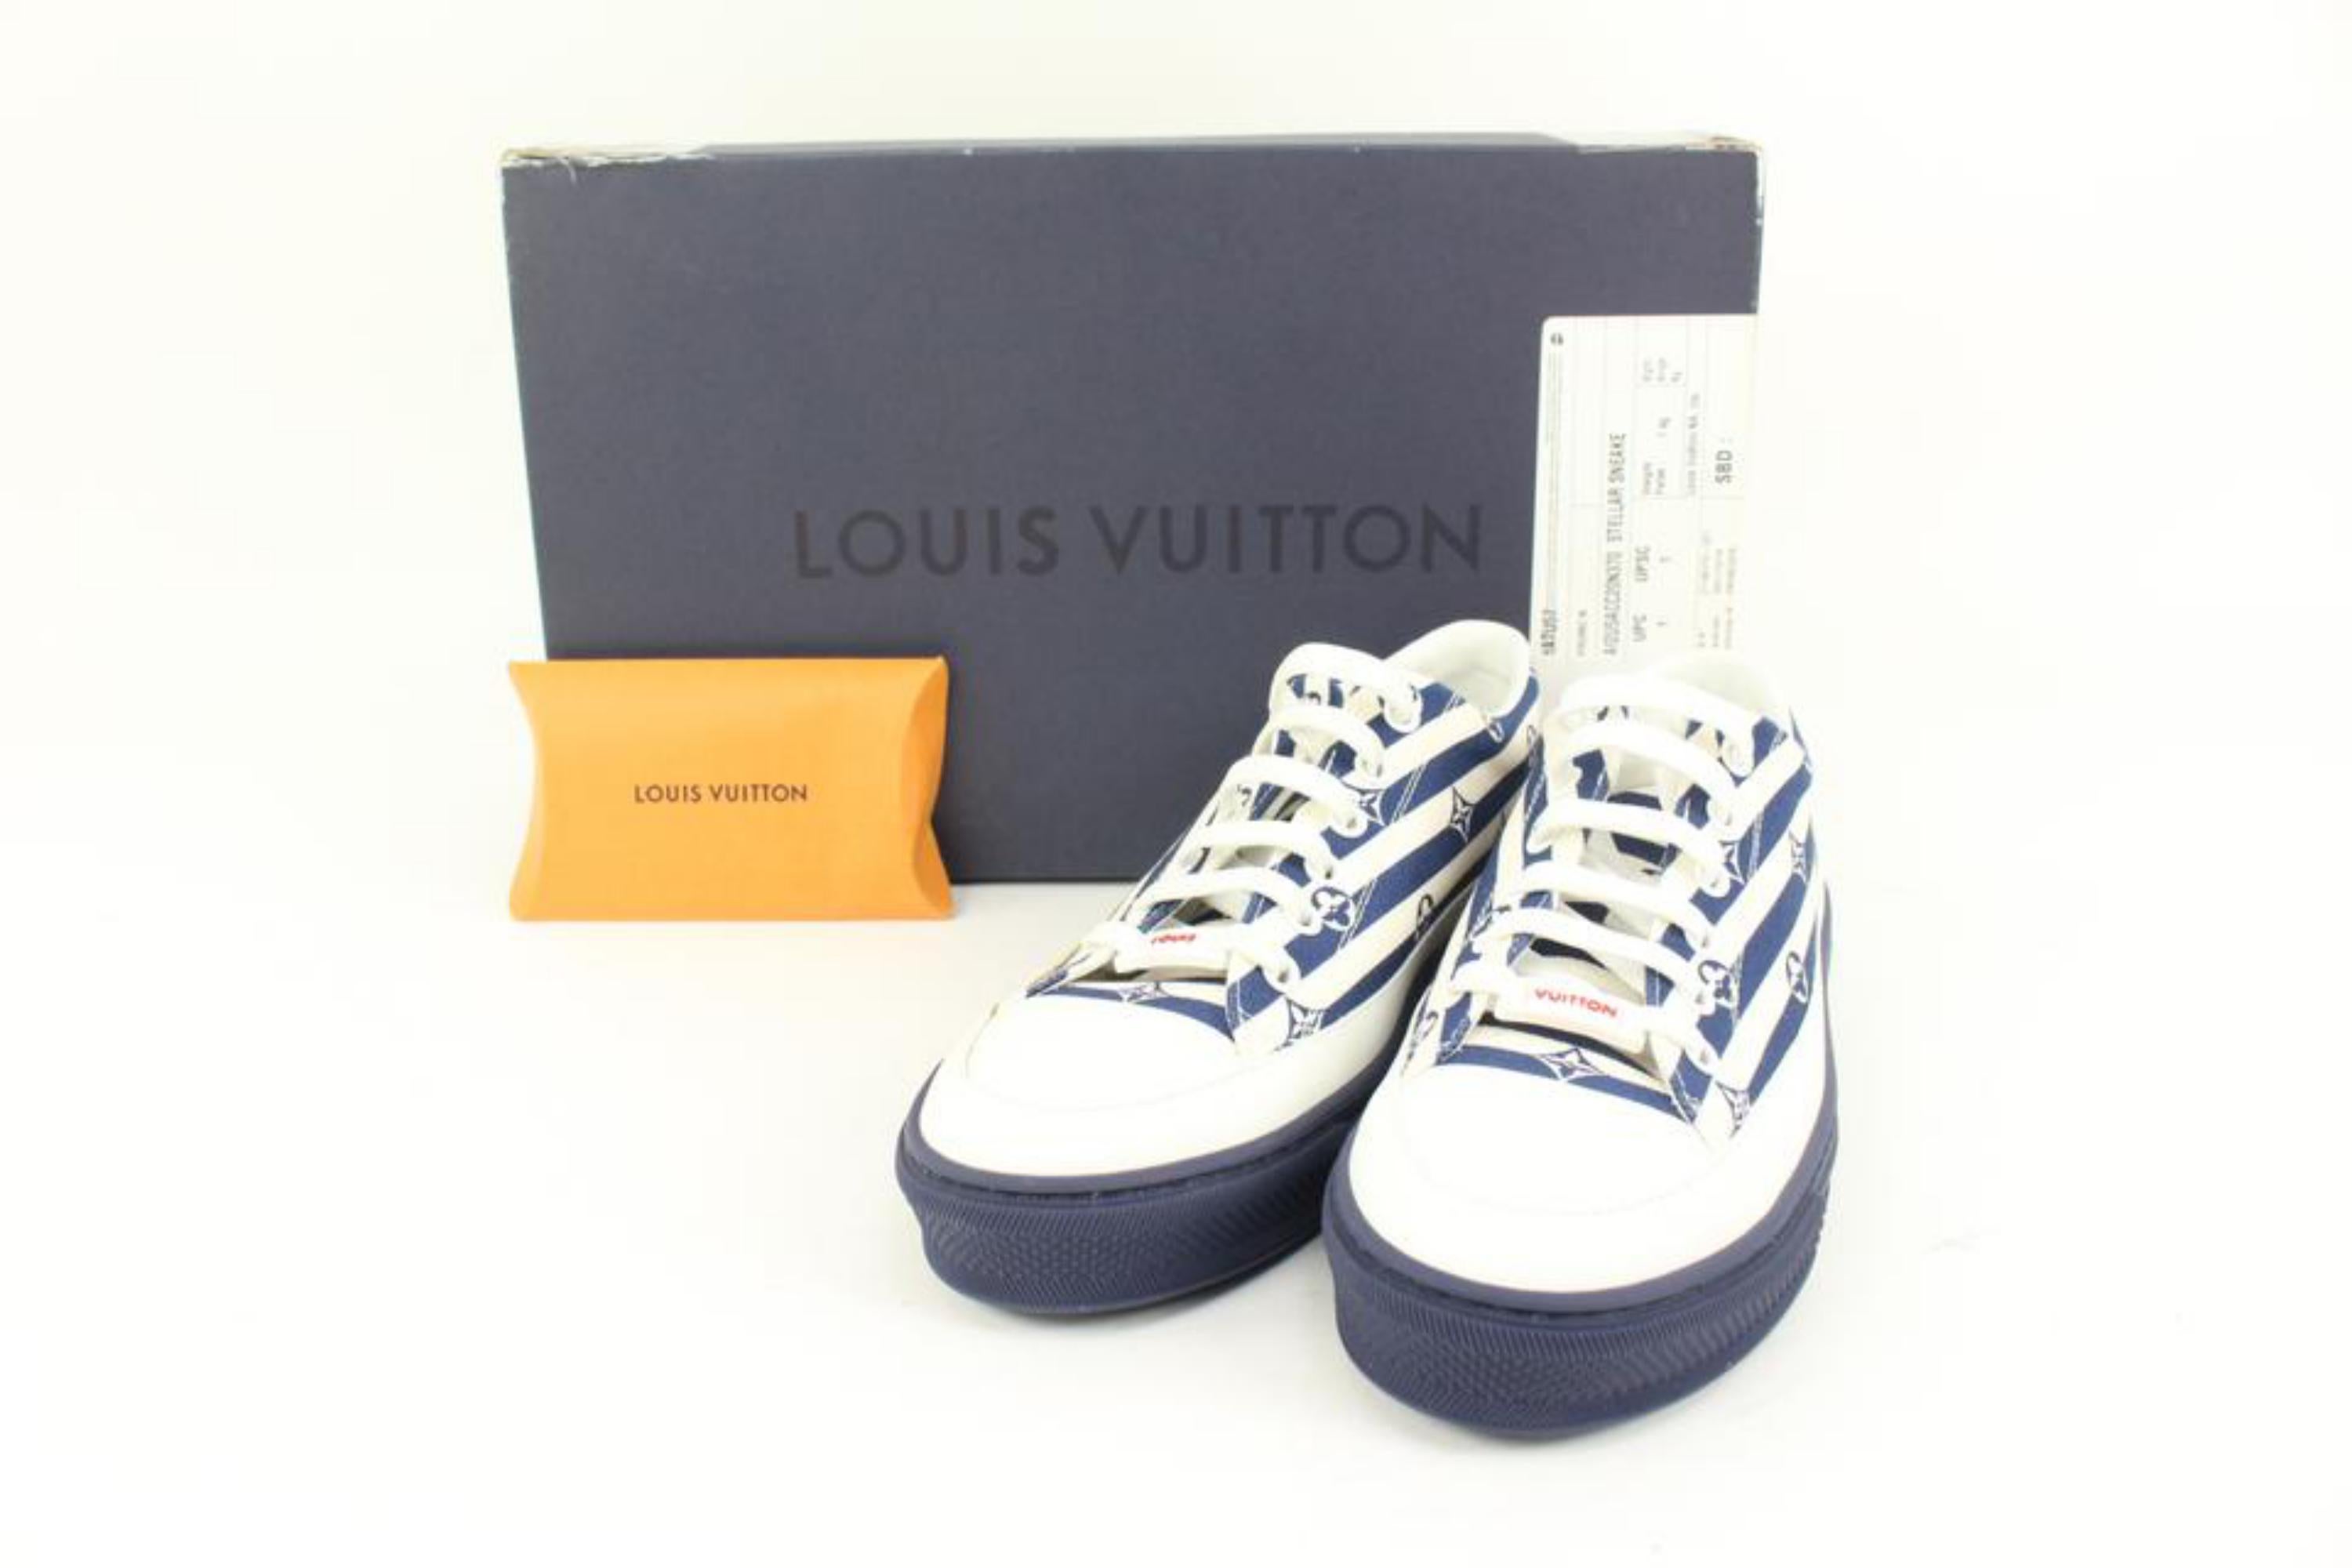 Louis Vuitton Damen Größe 37 Weiß Marine Monogramm Escale Stellar Low Sneaker s329lv9
Code/Zeitungsnummer des Unternehmens: VL0210
In: Italien hergestellt
Maße: Länge:  10,2